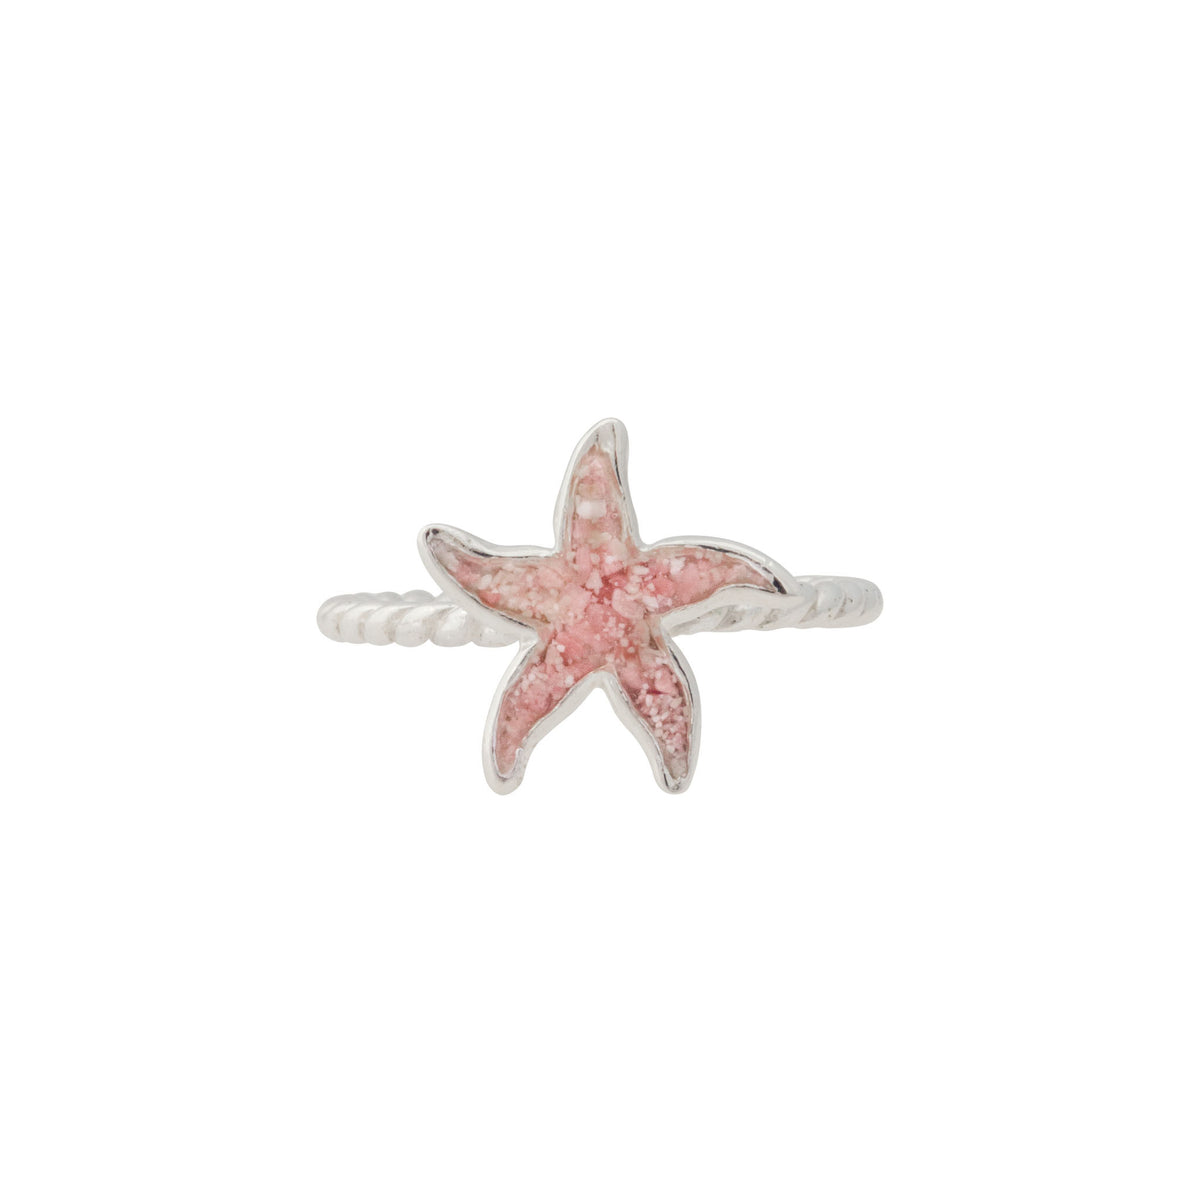 Friends ~ Small Starfish Braided Band Ring - Alexandra Mosher Studio Jewellery Bermuda Fine